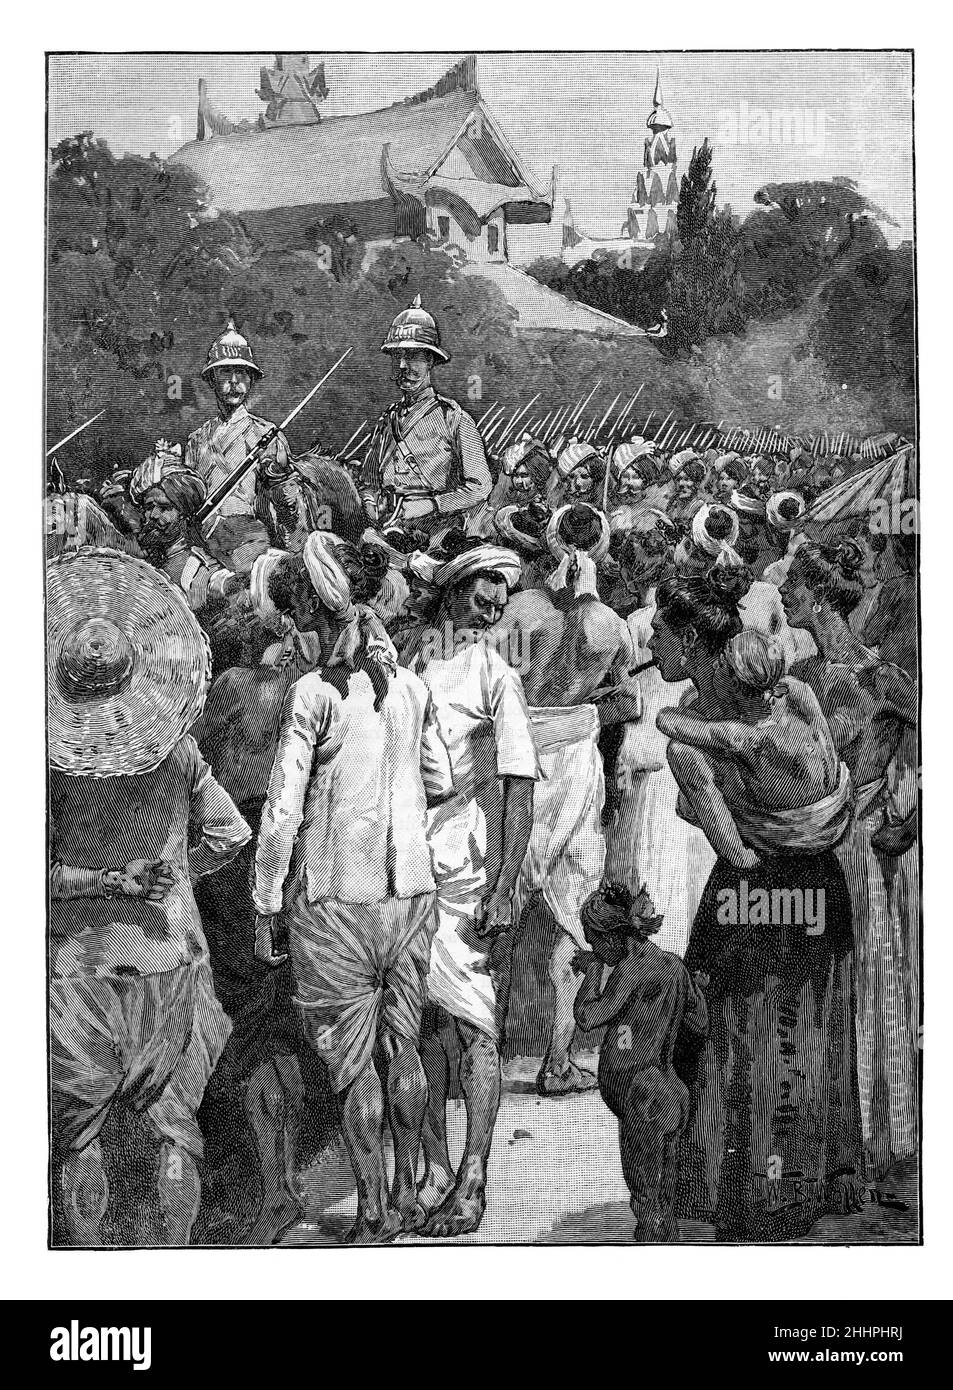 Illustration en noir et blanc; les forces britanniques entrent à Mandalay, Birmanie, le 28th novembre 1885 Banque D'Images